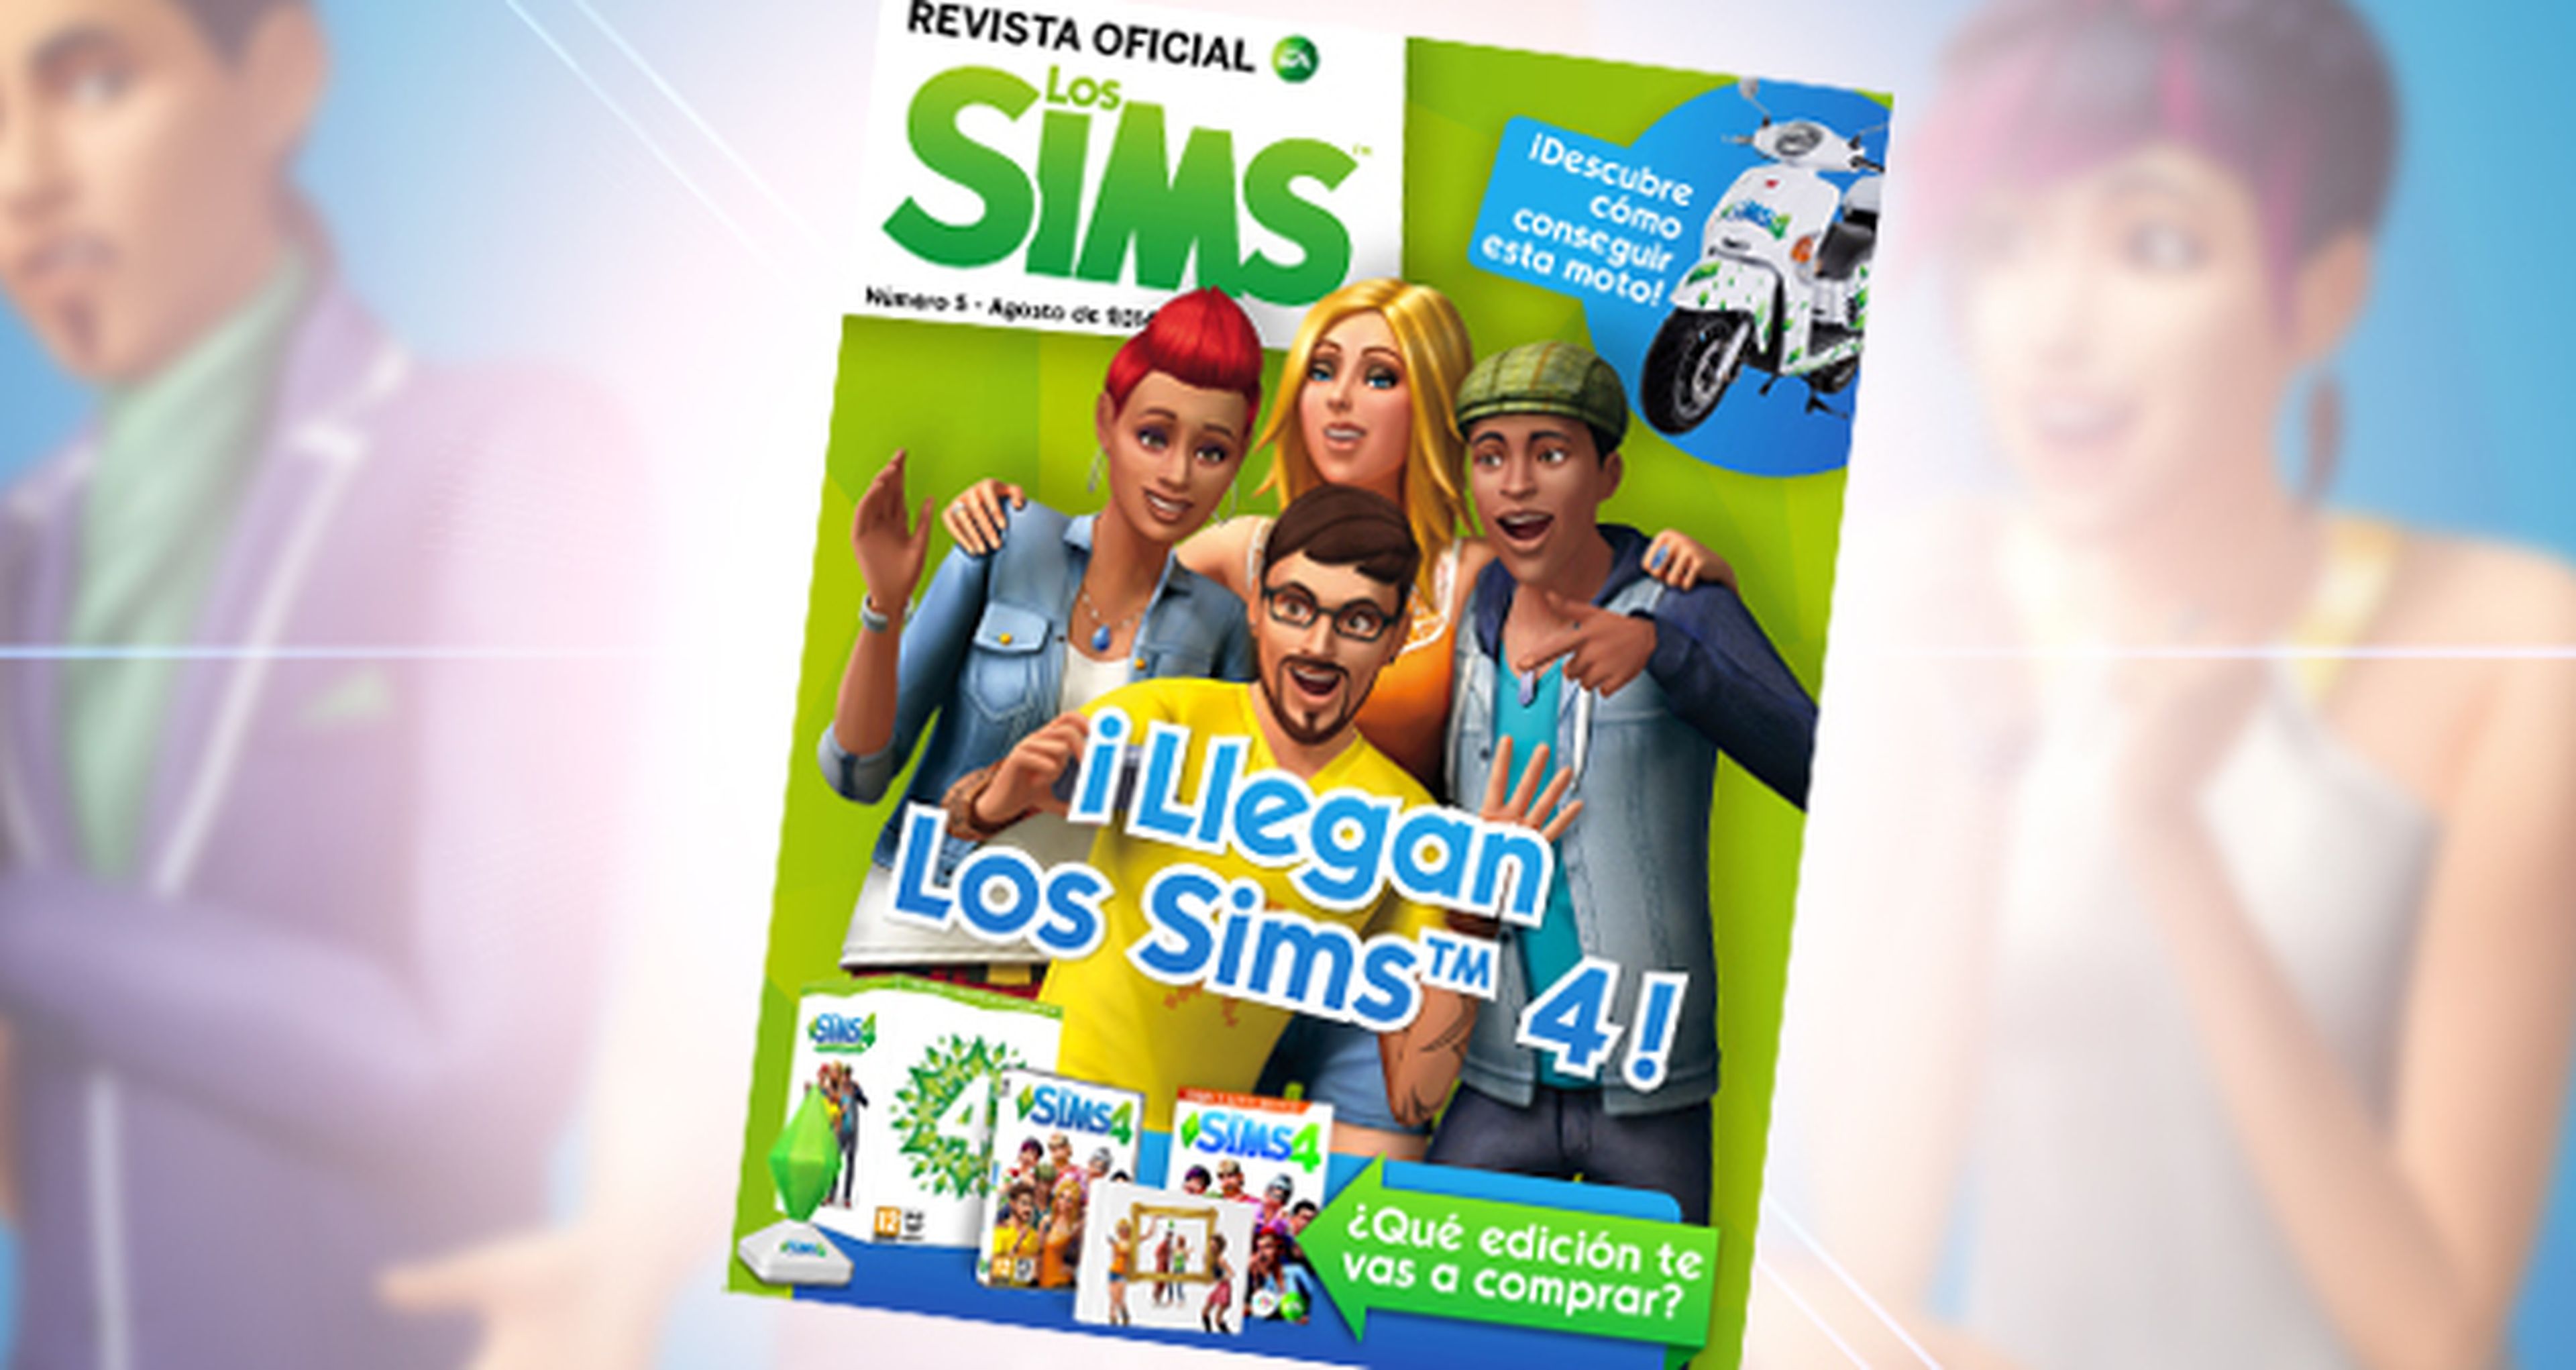 ¡Número 5 de Revista Oficial Los Sims ya disponible!